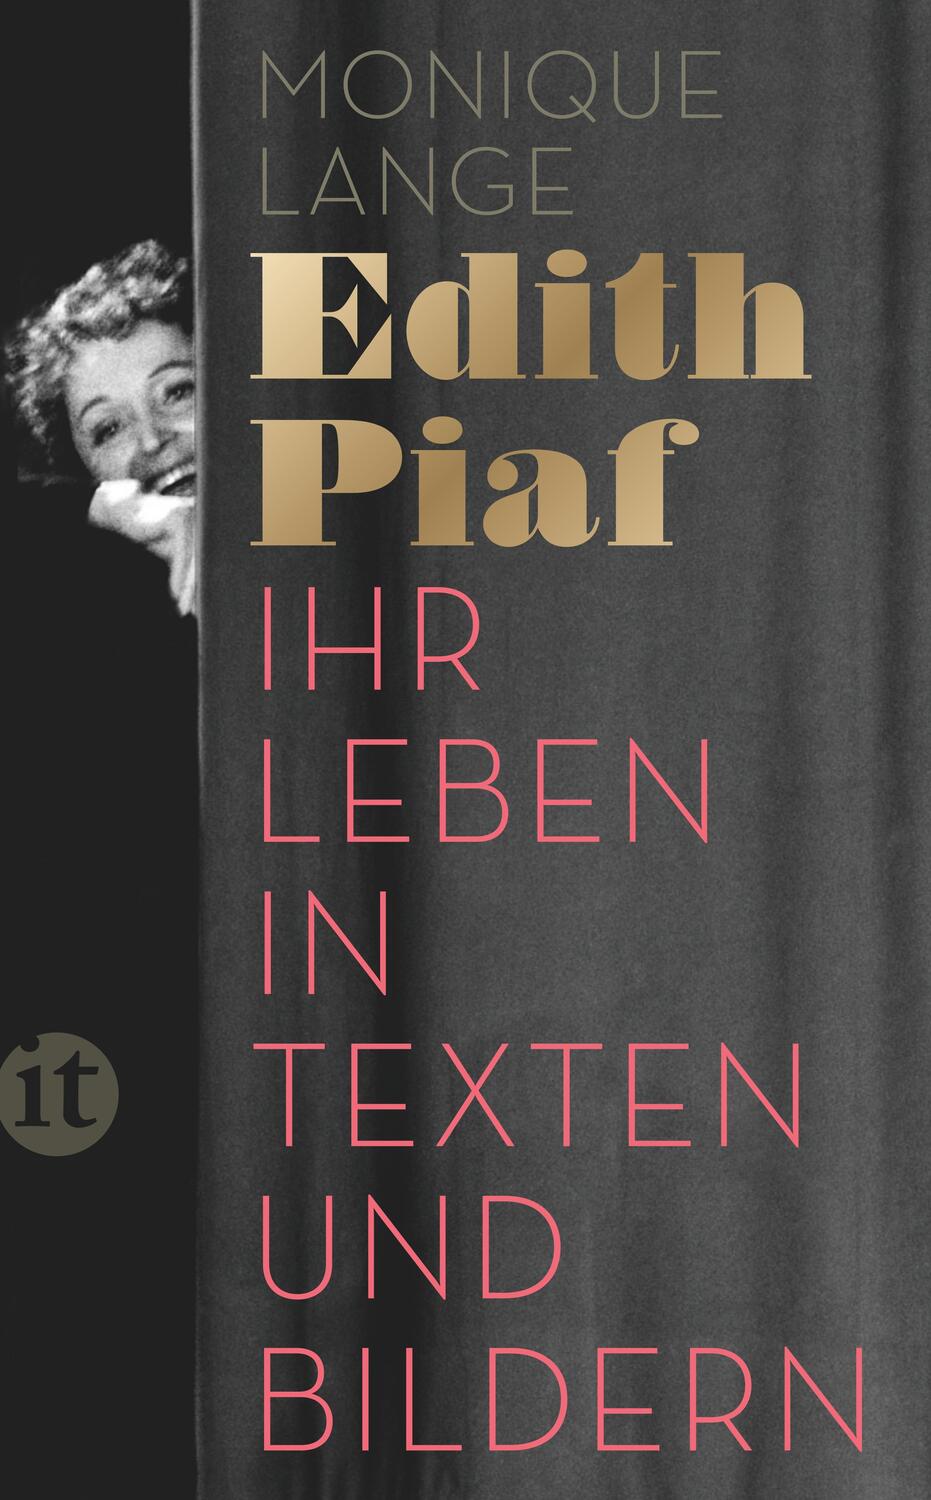 Edith Piaf - Lange, Monique